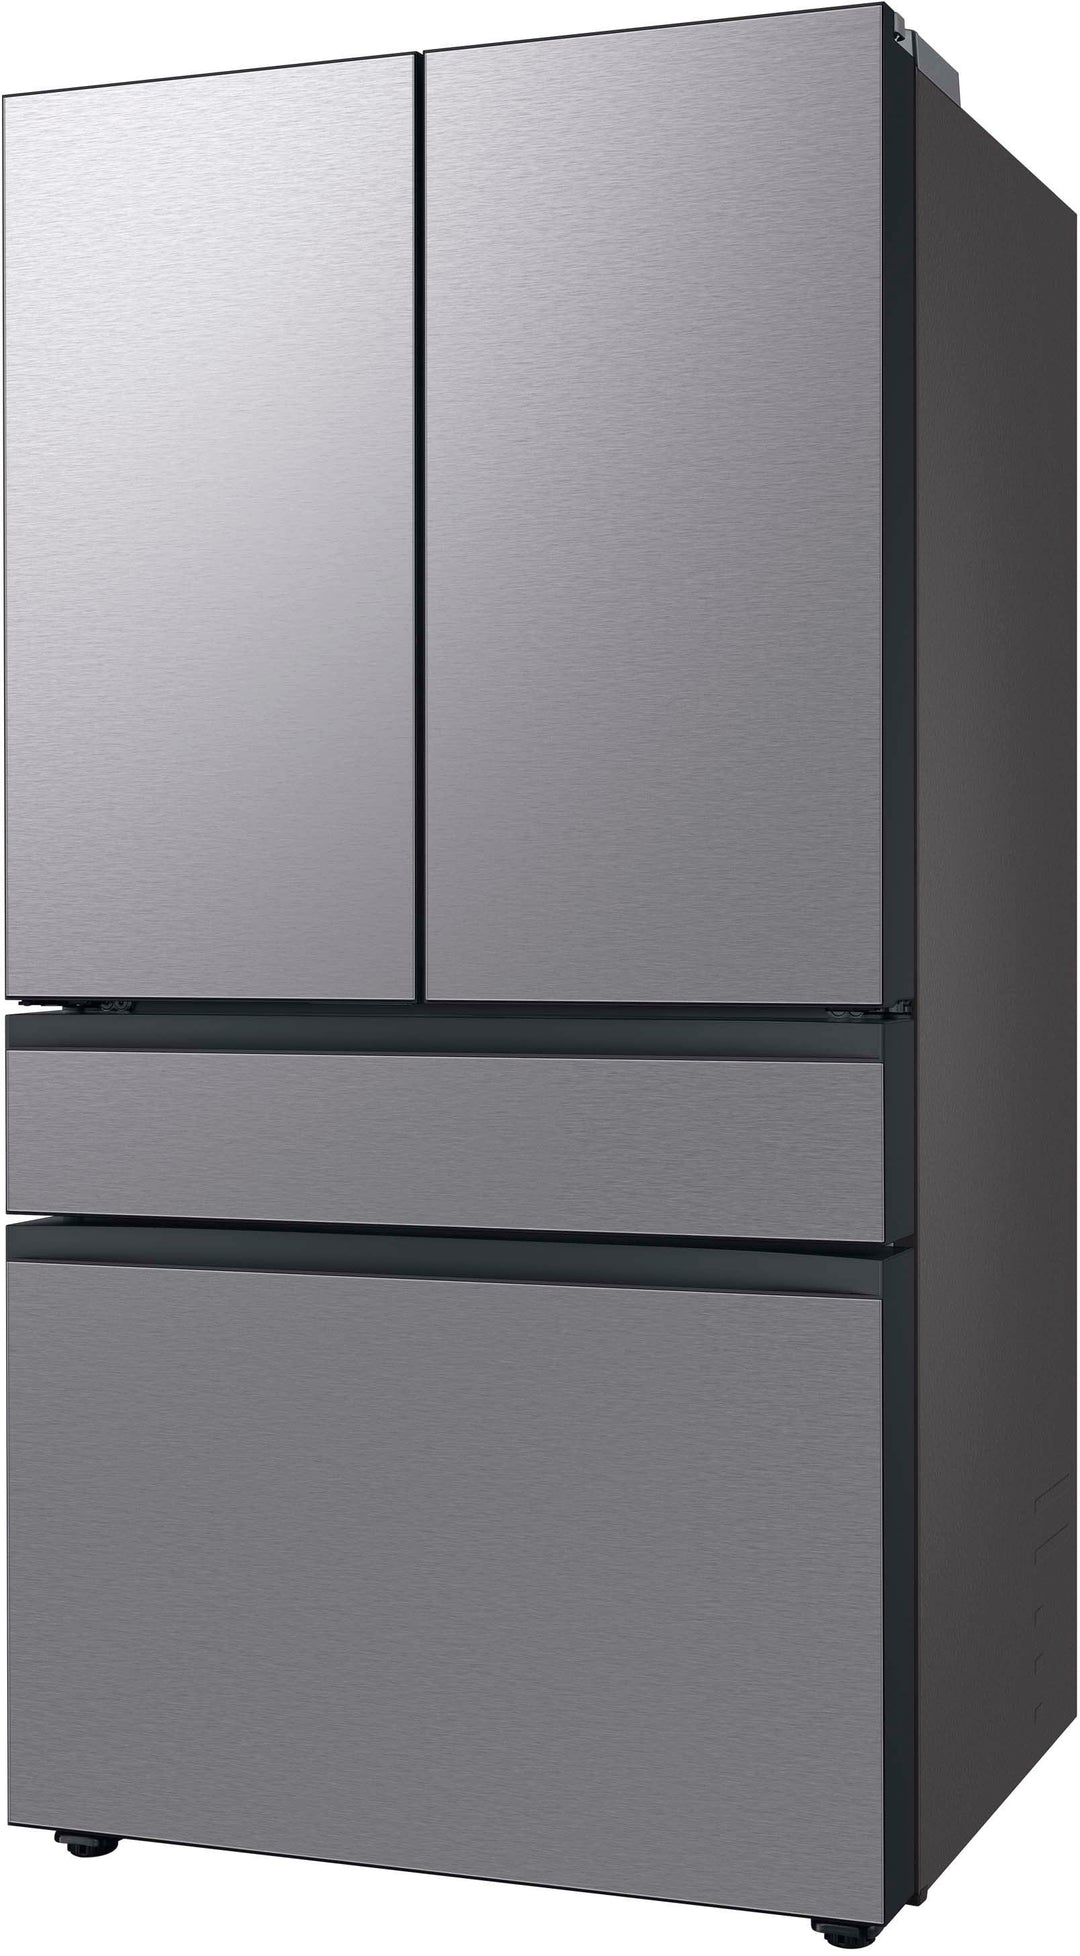 Samsung - Bespoke 29 cu. ft 4-Door French Door Refrigerator with Beverage Center - Stainless steel_1